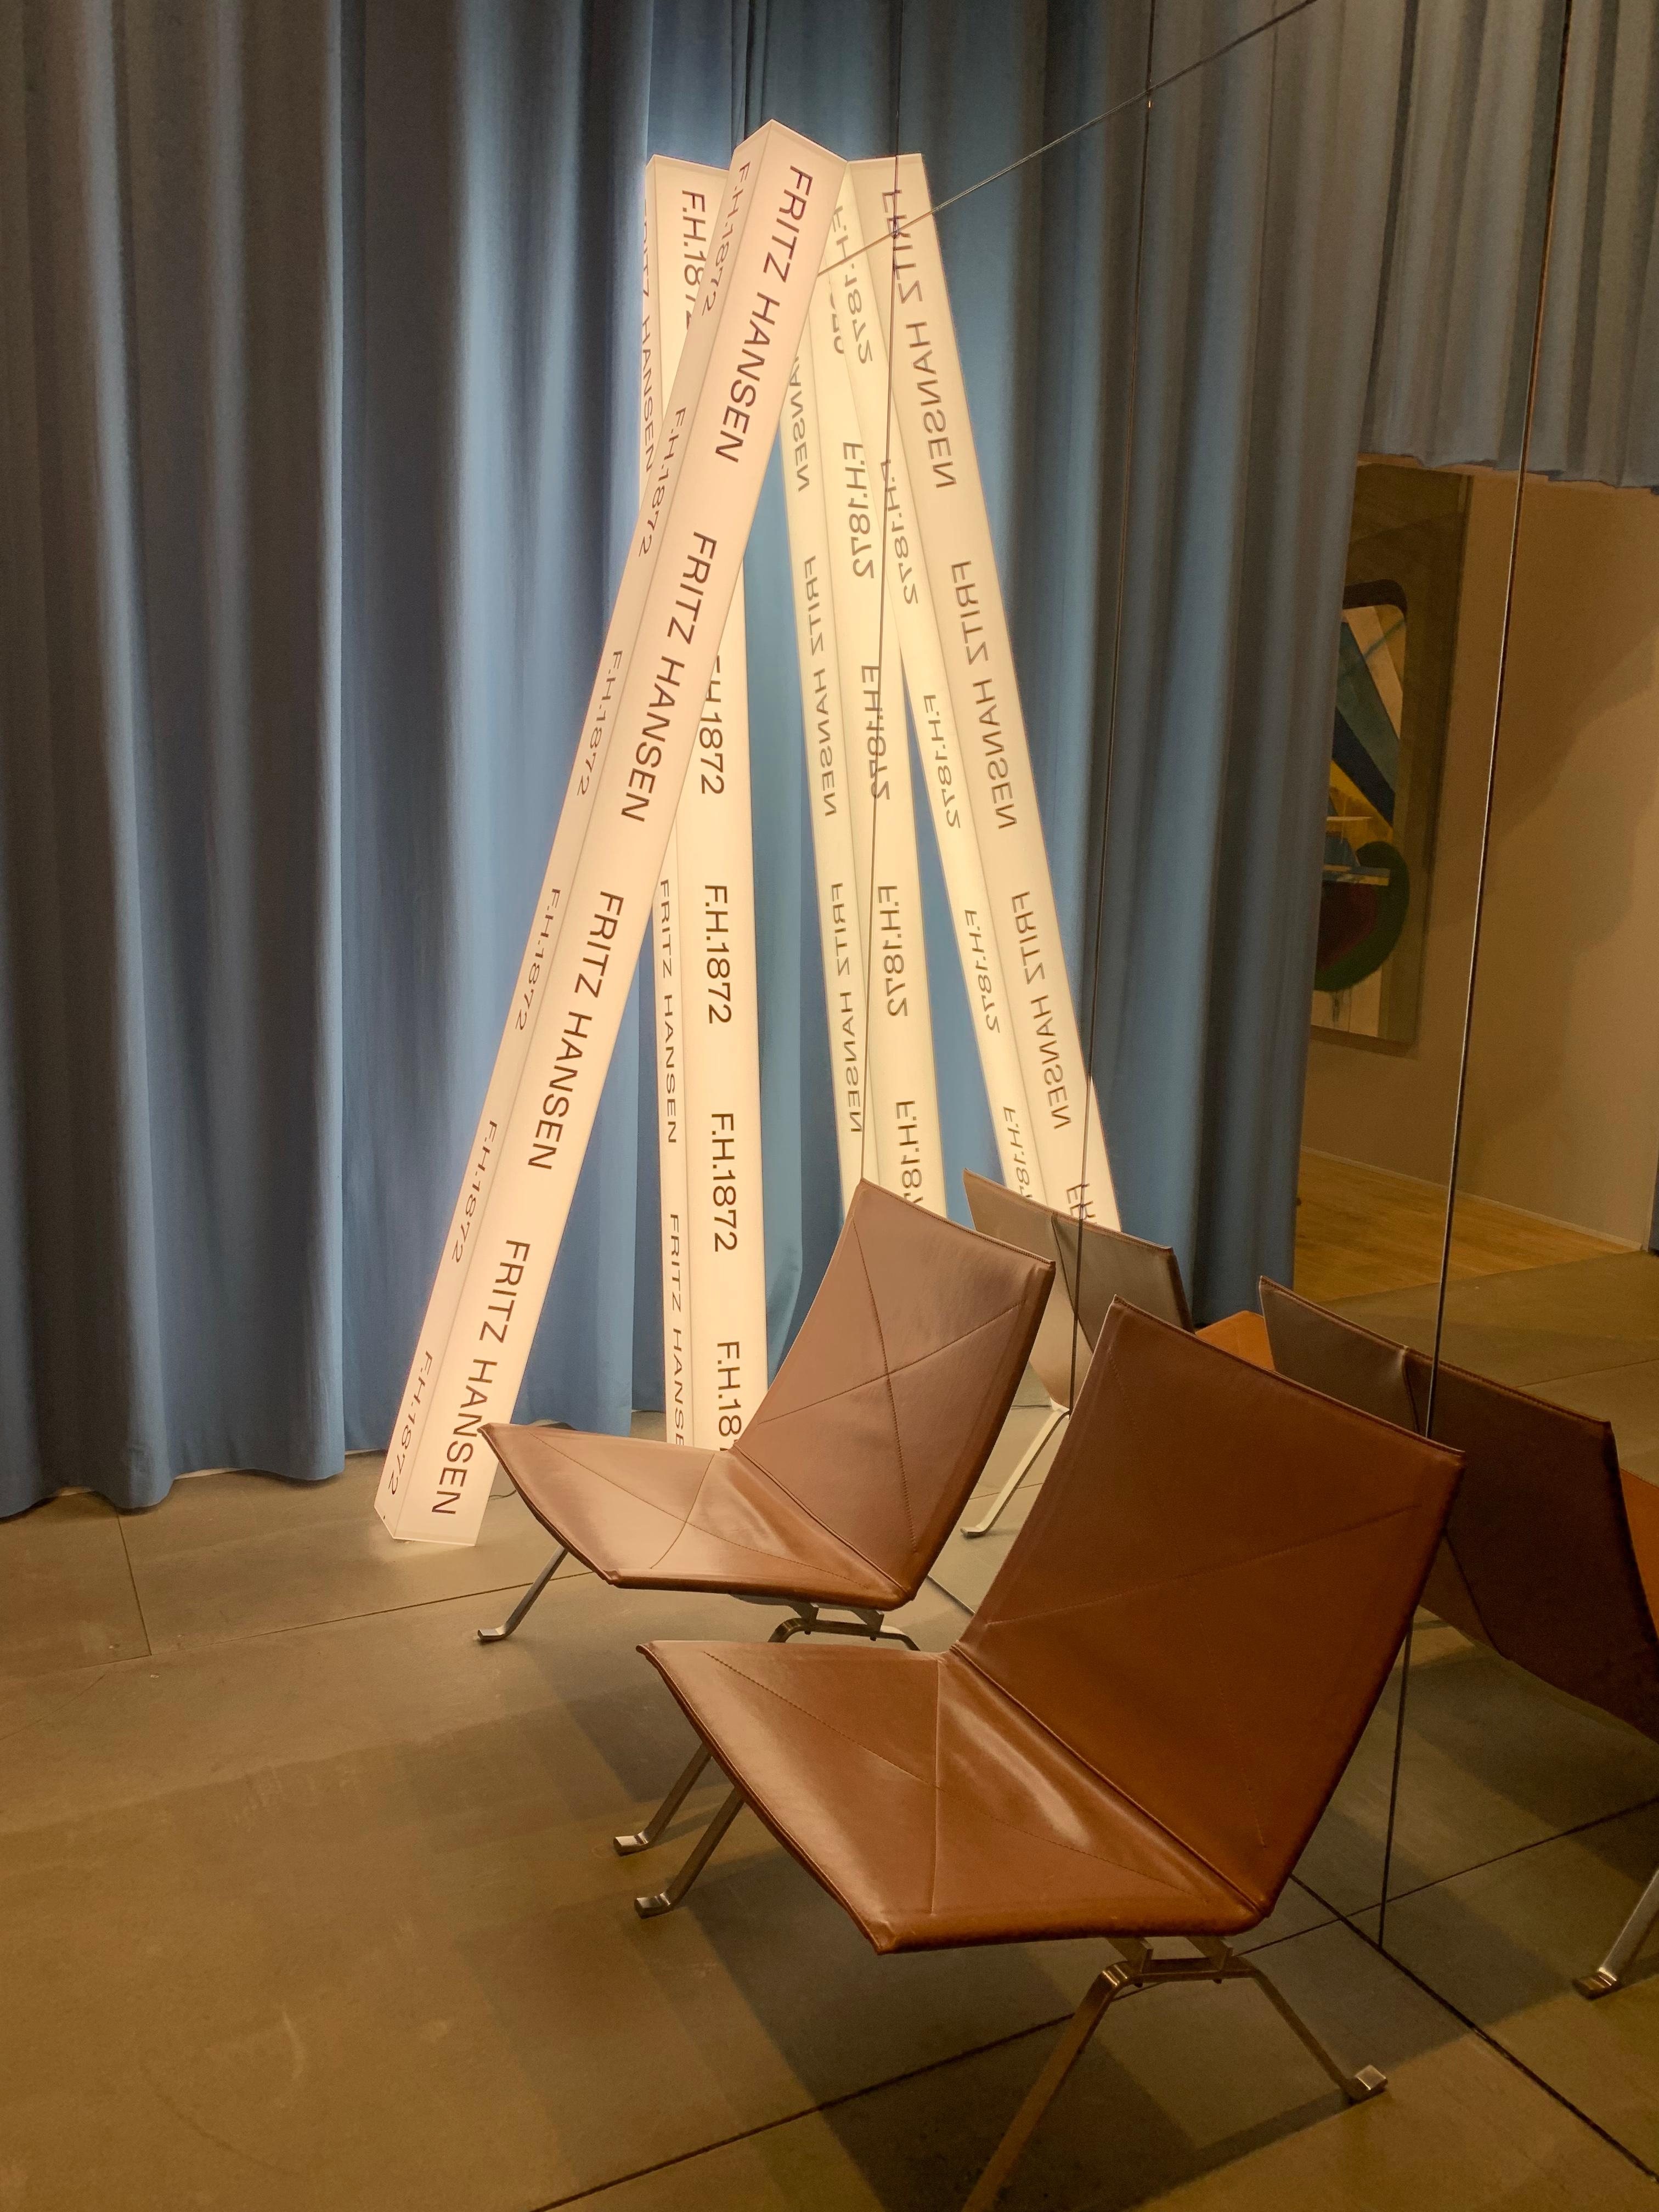 Ach ja, verlockend war der Anblick der bequemen Stühle von #fritzhansen auf der #imm2019! #imm